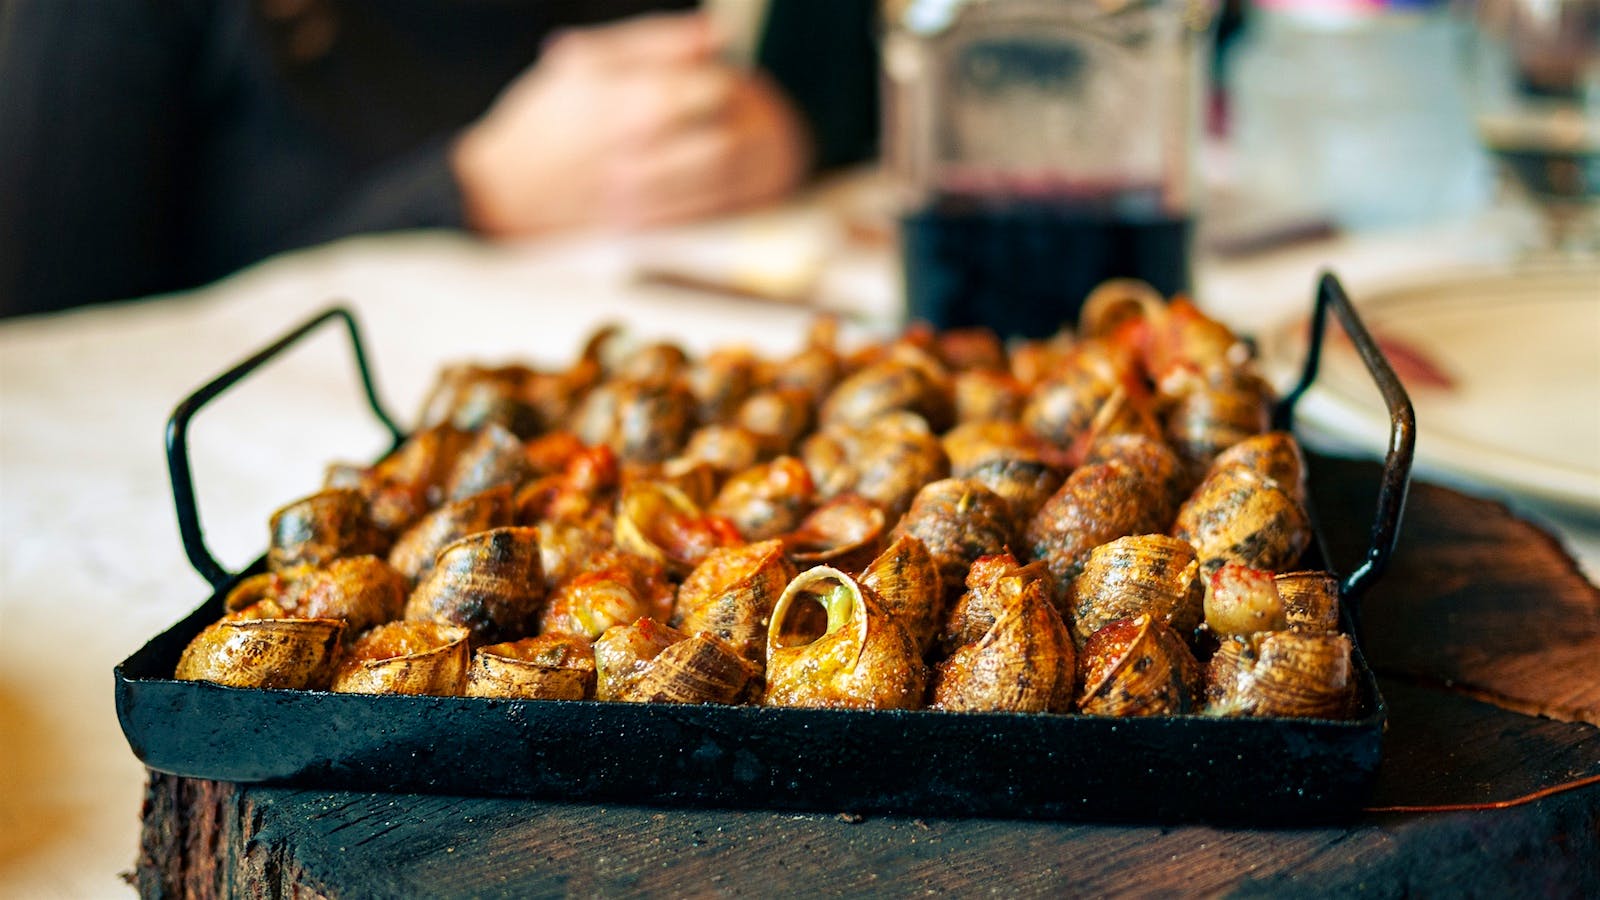 Food Lust People Love: Escargots à la Bourguignonne